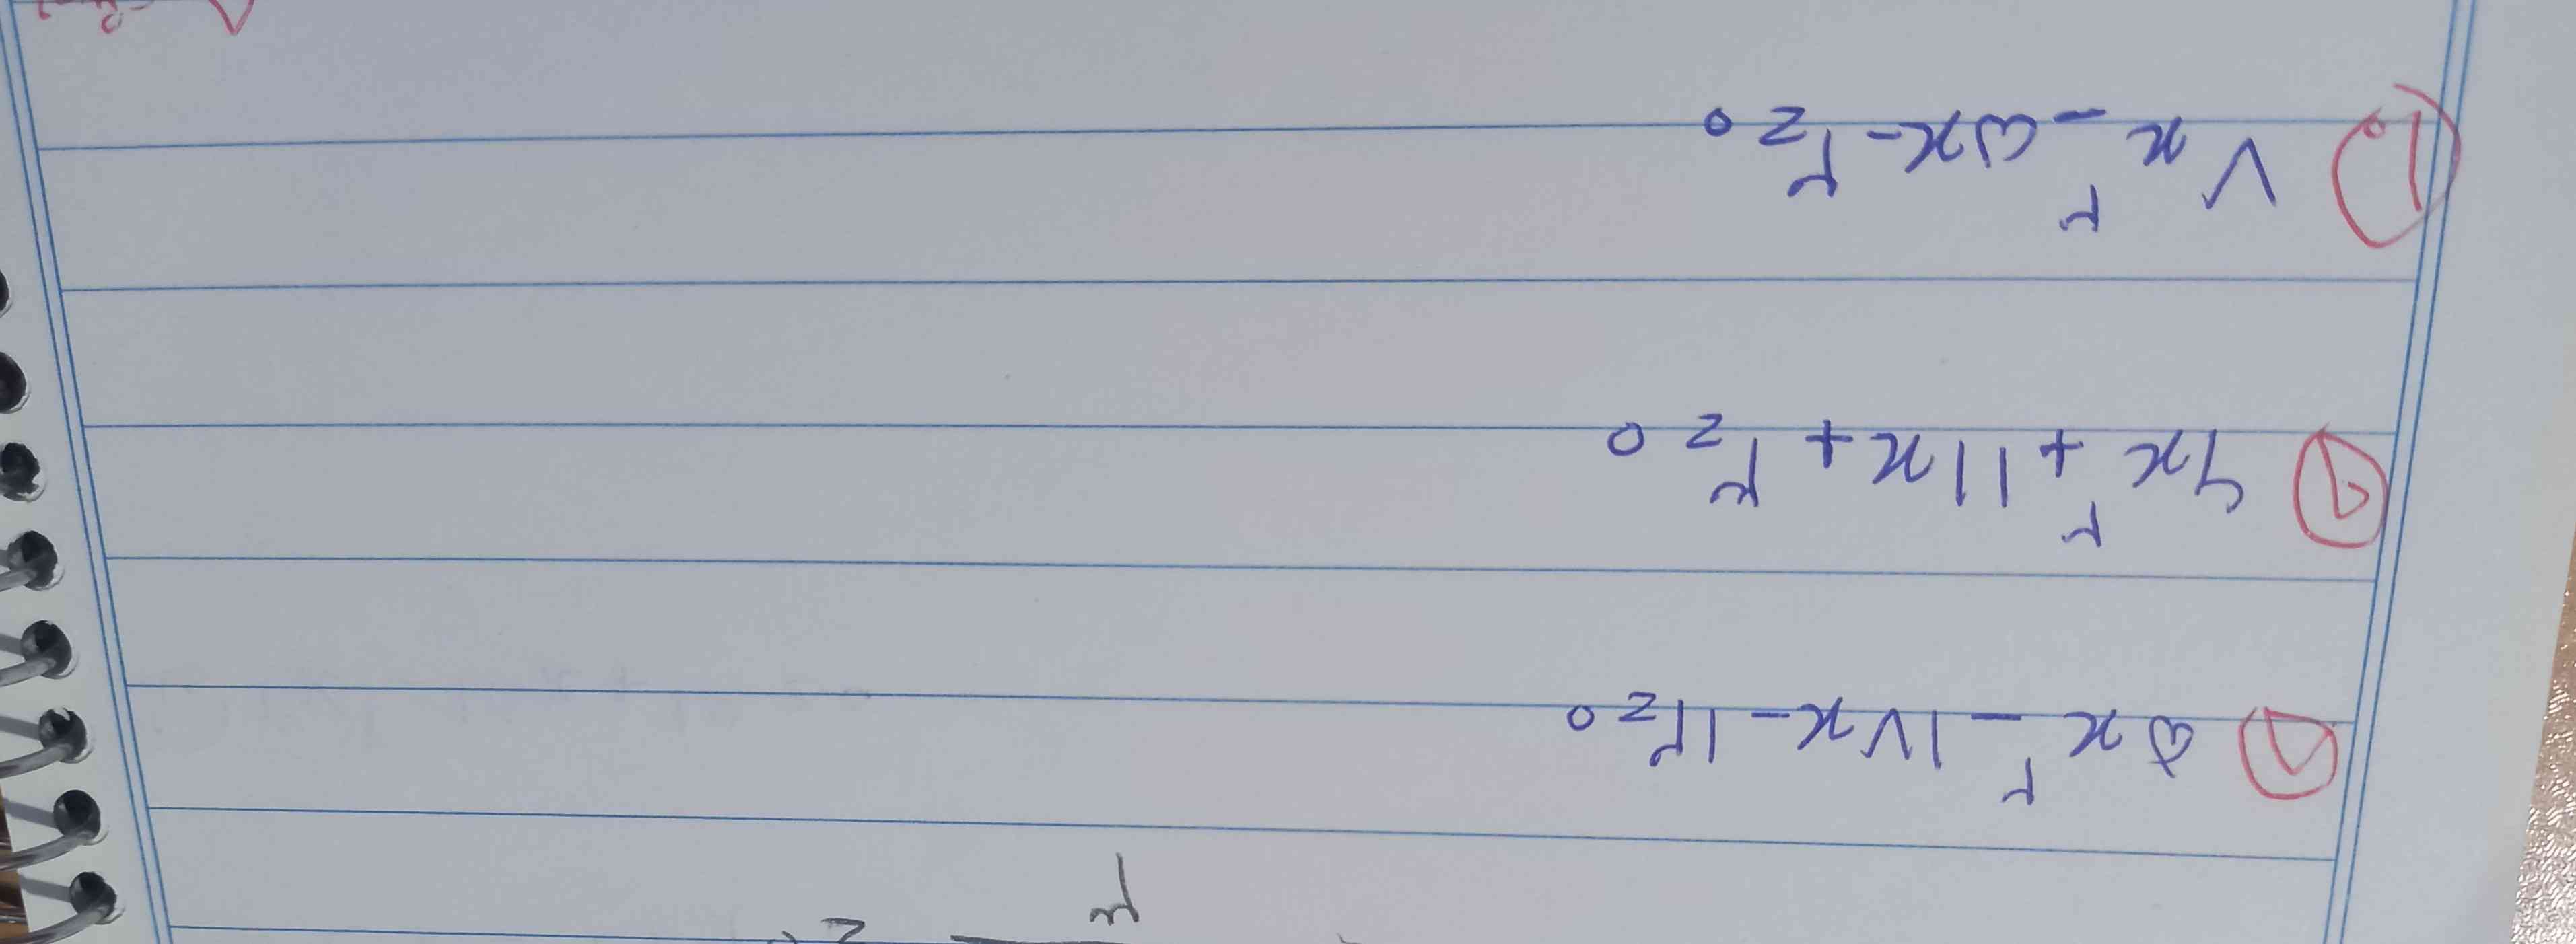 سلام دوستان لطفا این معادله ها را برایم حل کنید به روش تجزیه معرکه میزنم 